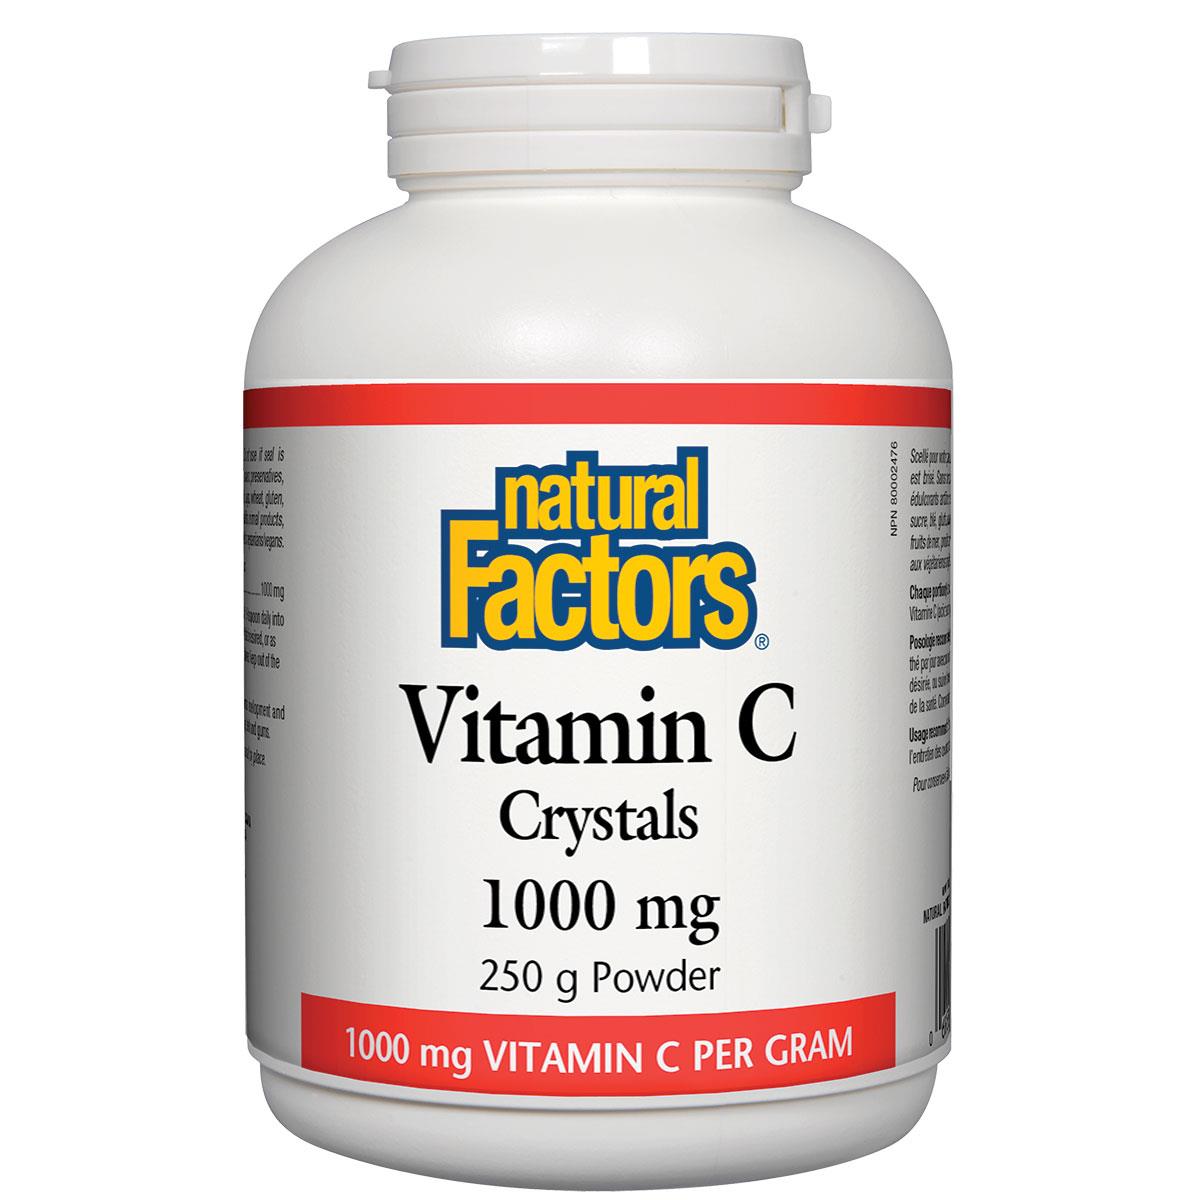 Natural Factors Vitamin C Crystals, 1000mg, 250g powder